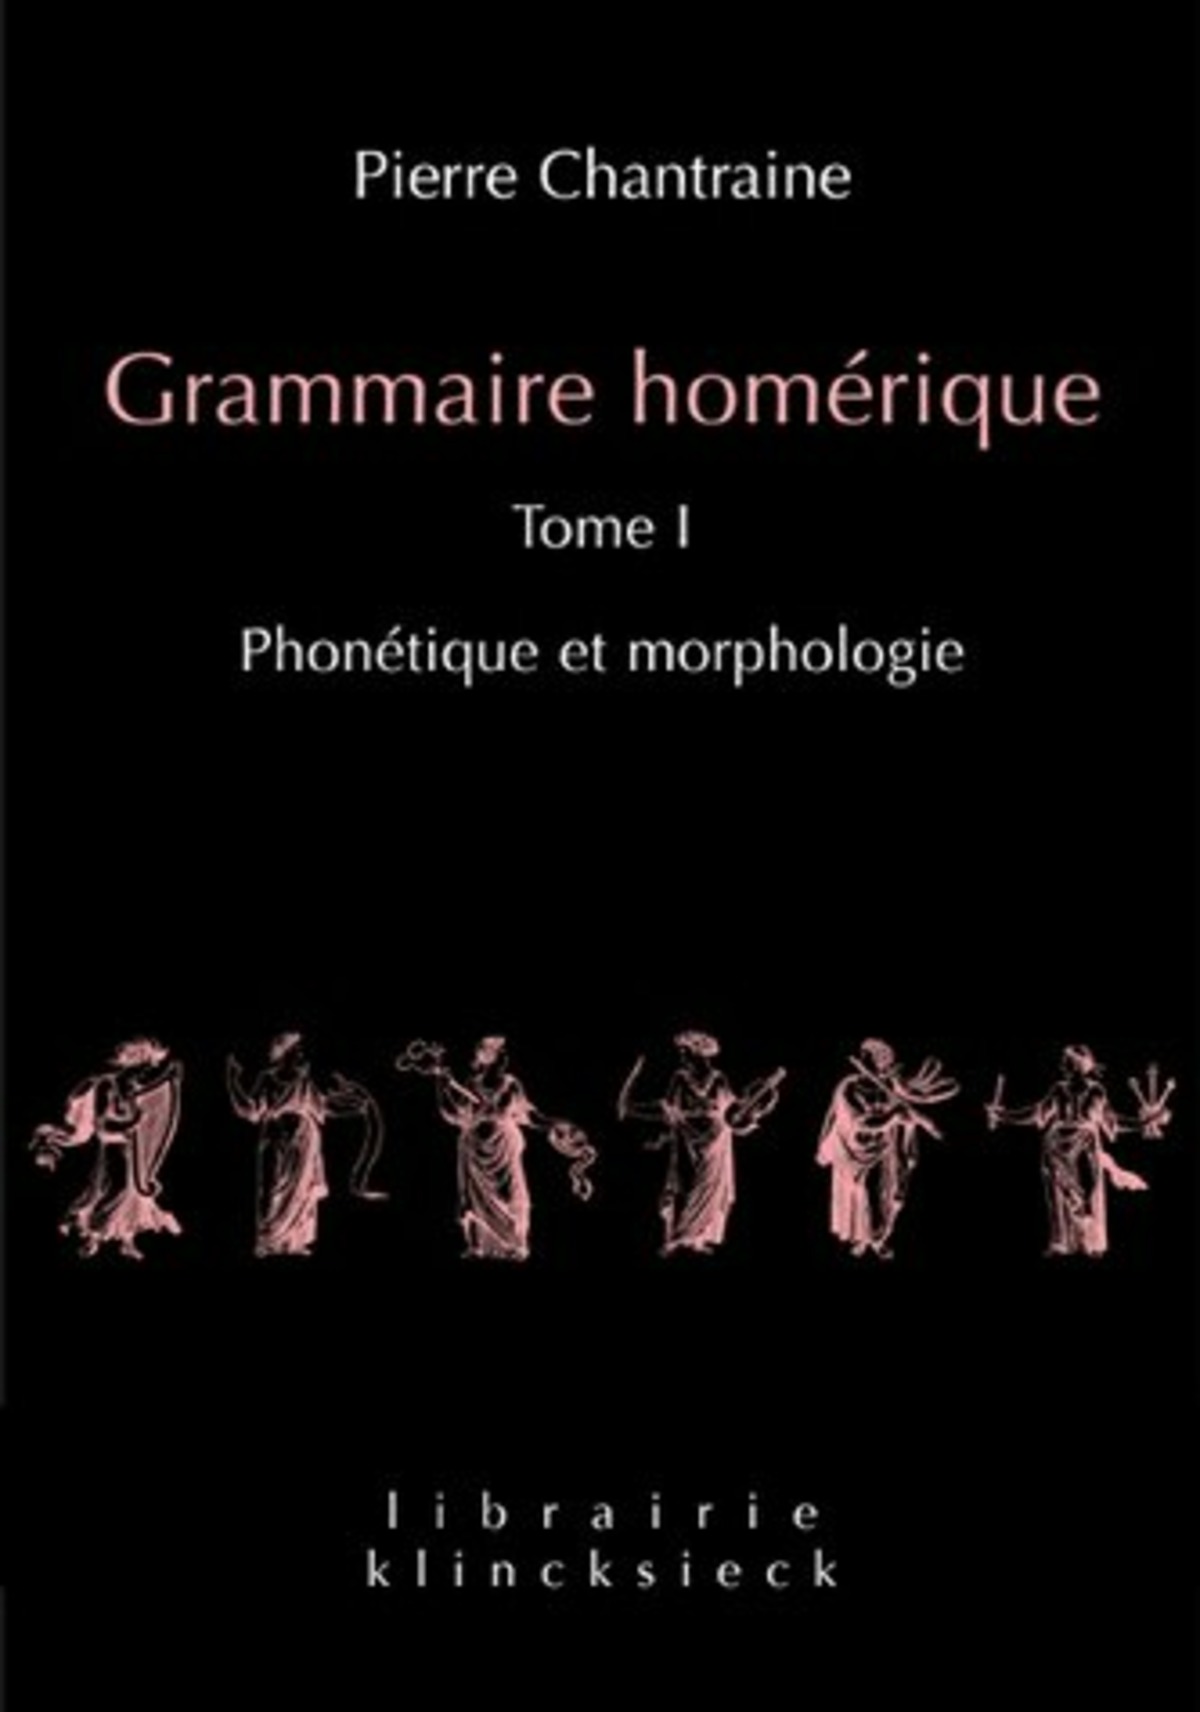 Grammaire homérique. Tome I: Phonétique et morphologie